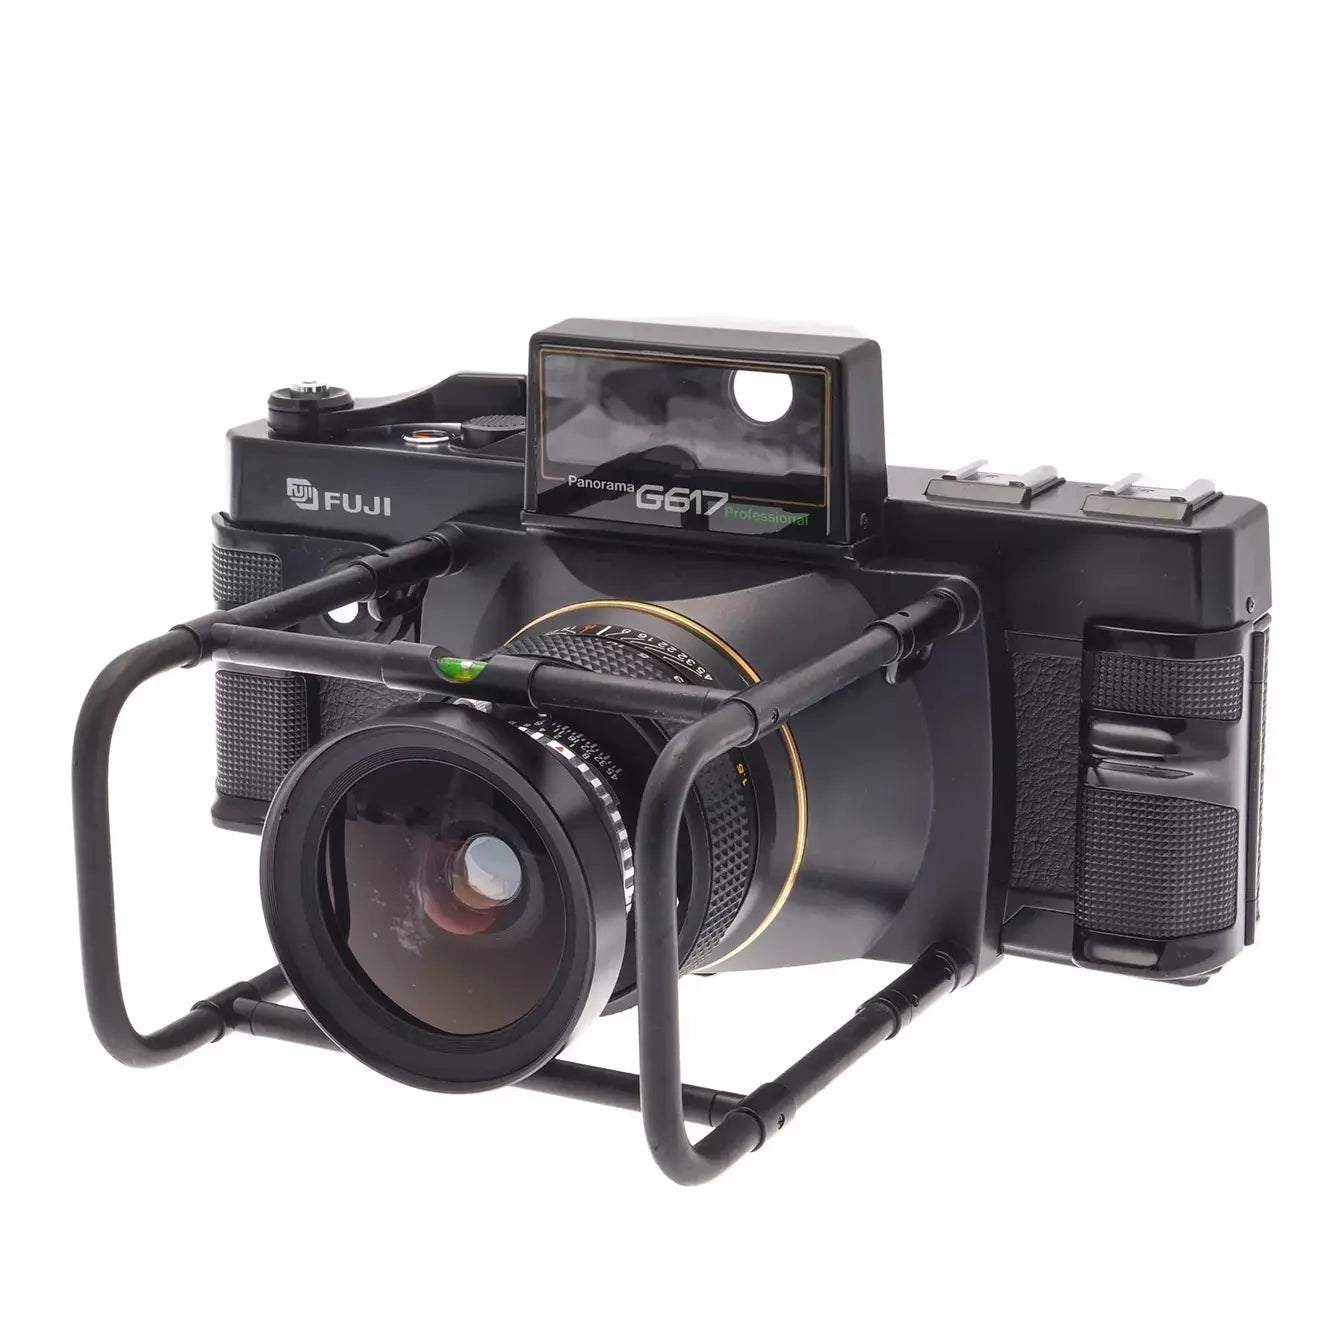 Fujifilm - Fujica G617 - with 105mm f/1.8 Lens